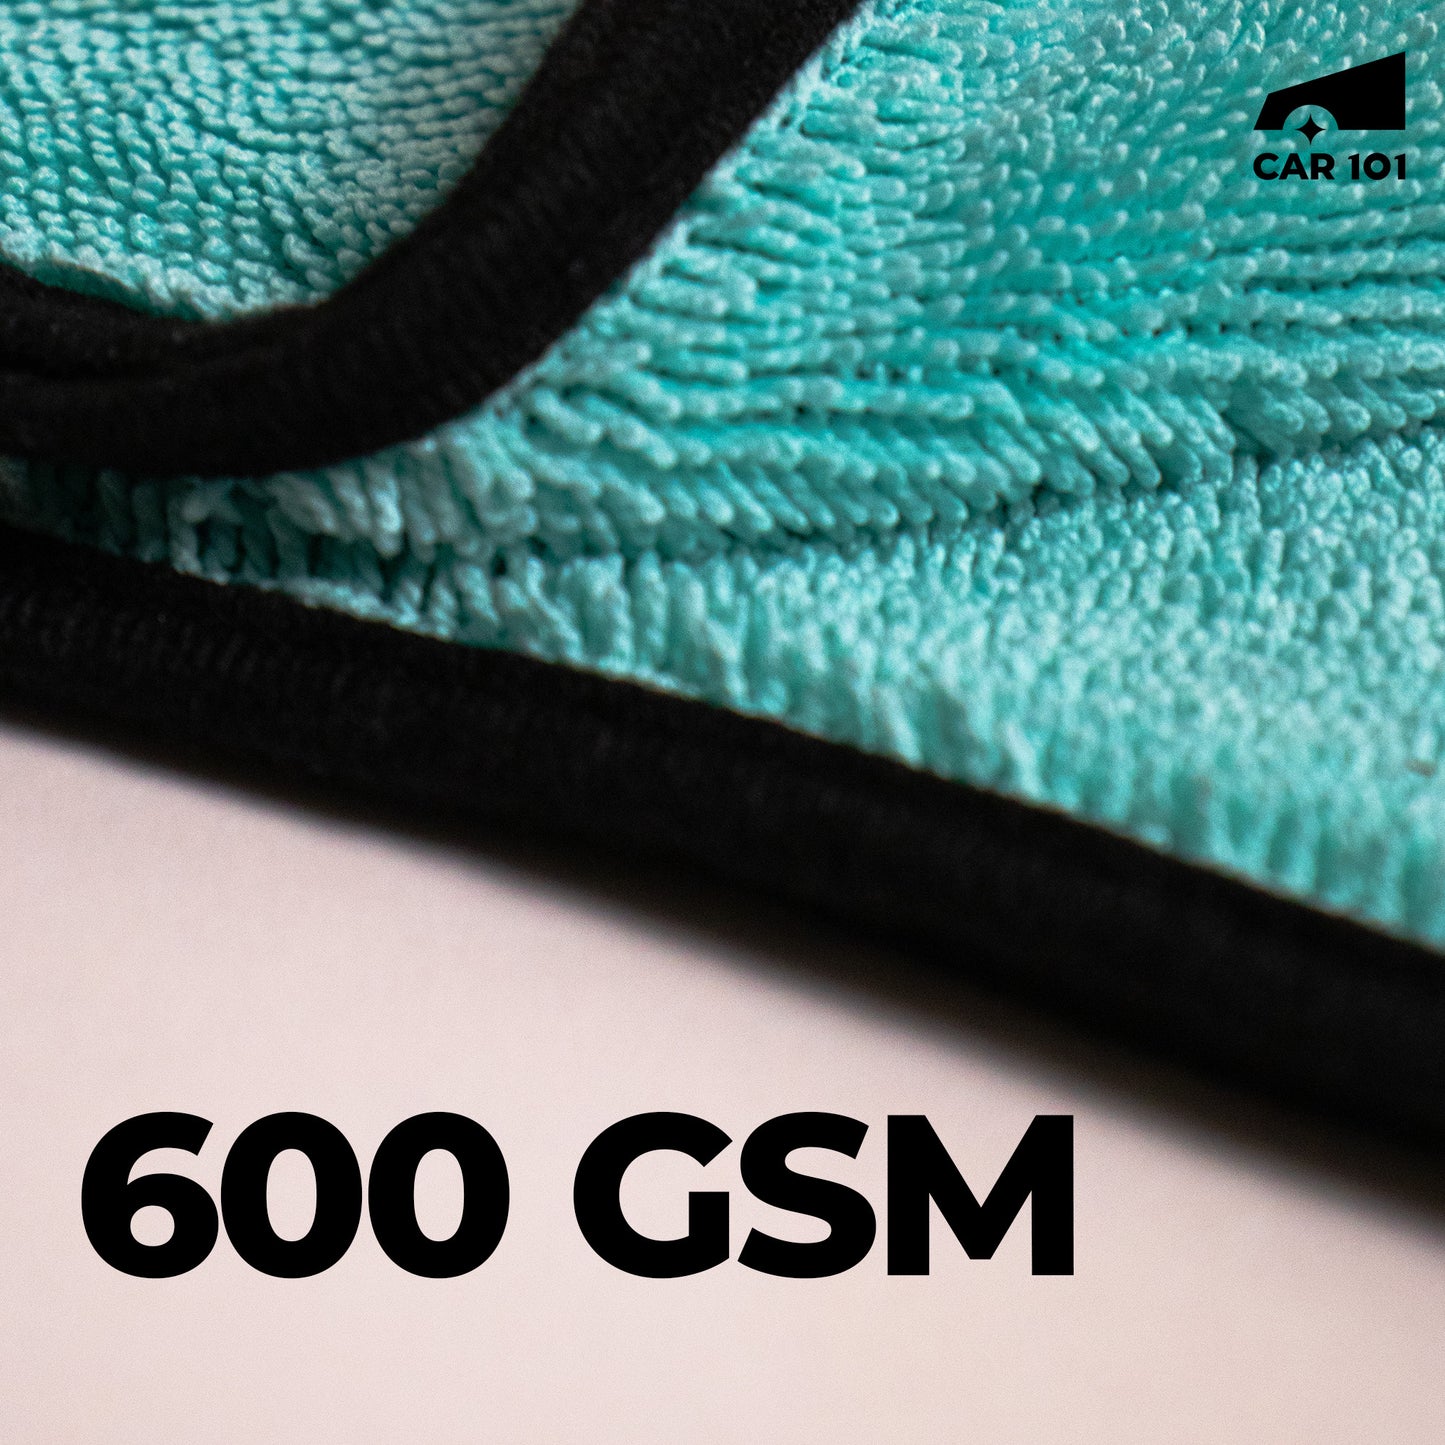 600 GSM TWISTED LOOP DRYING TOWEL